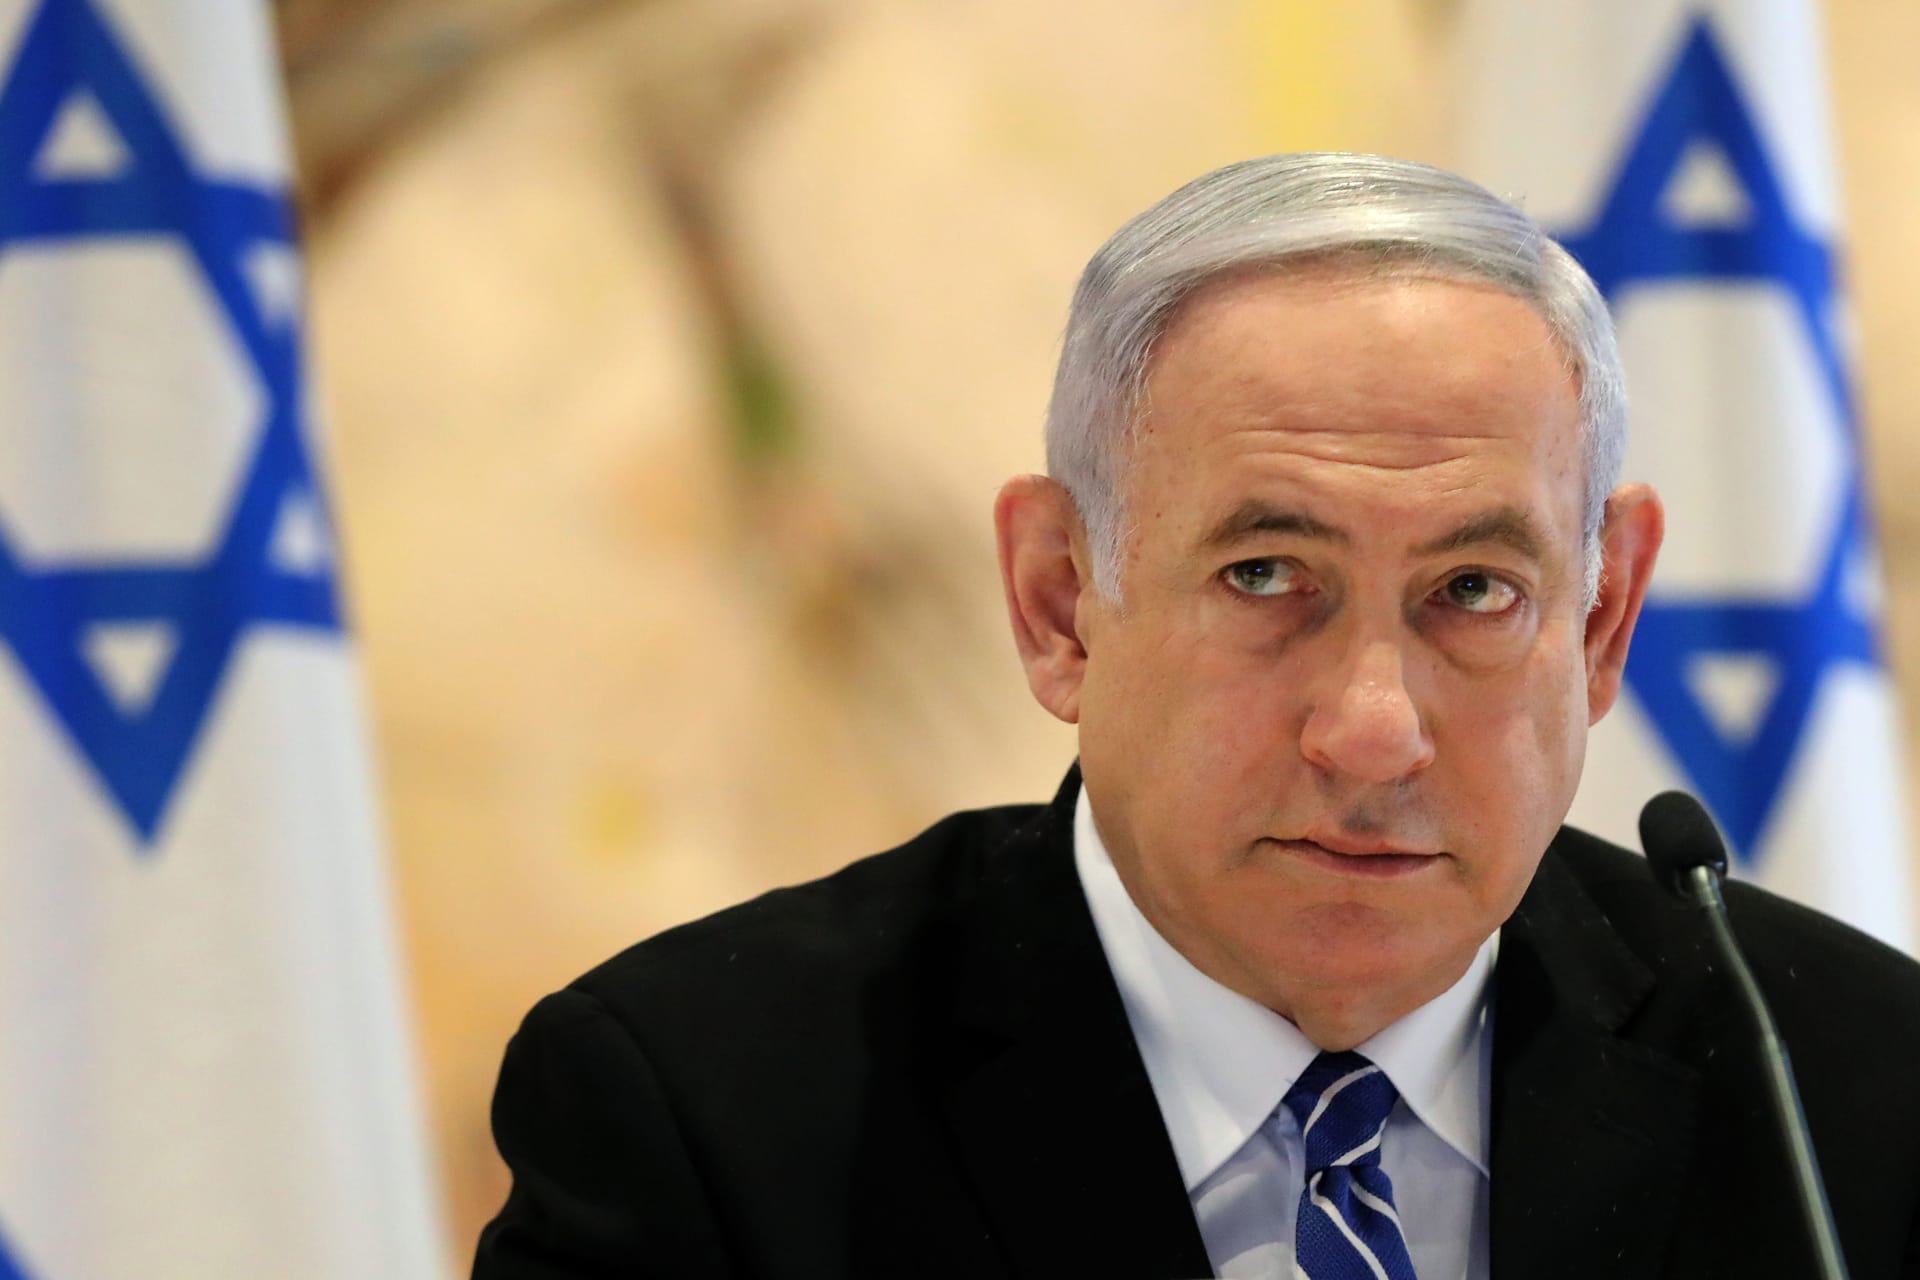 بعد القصف على إسرائيل.. نتنياهو يتوعد أعداءه بدفع الثمن ويدعو لتهدئة التوترات